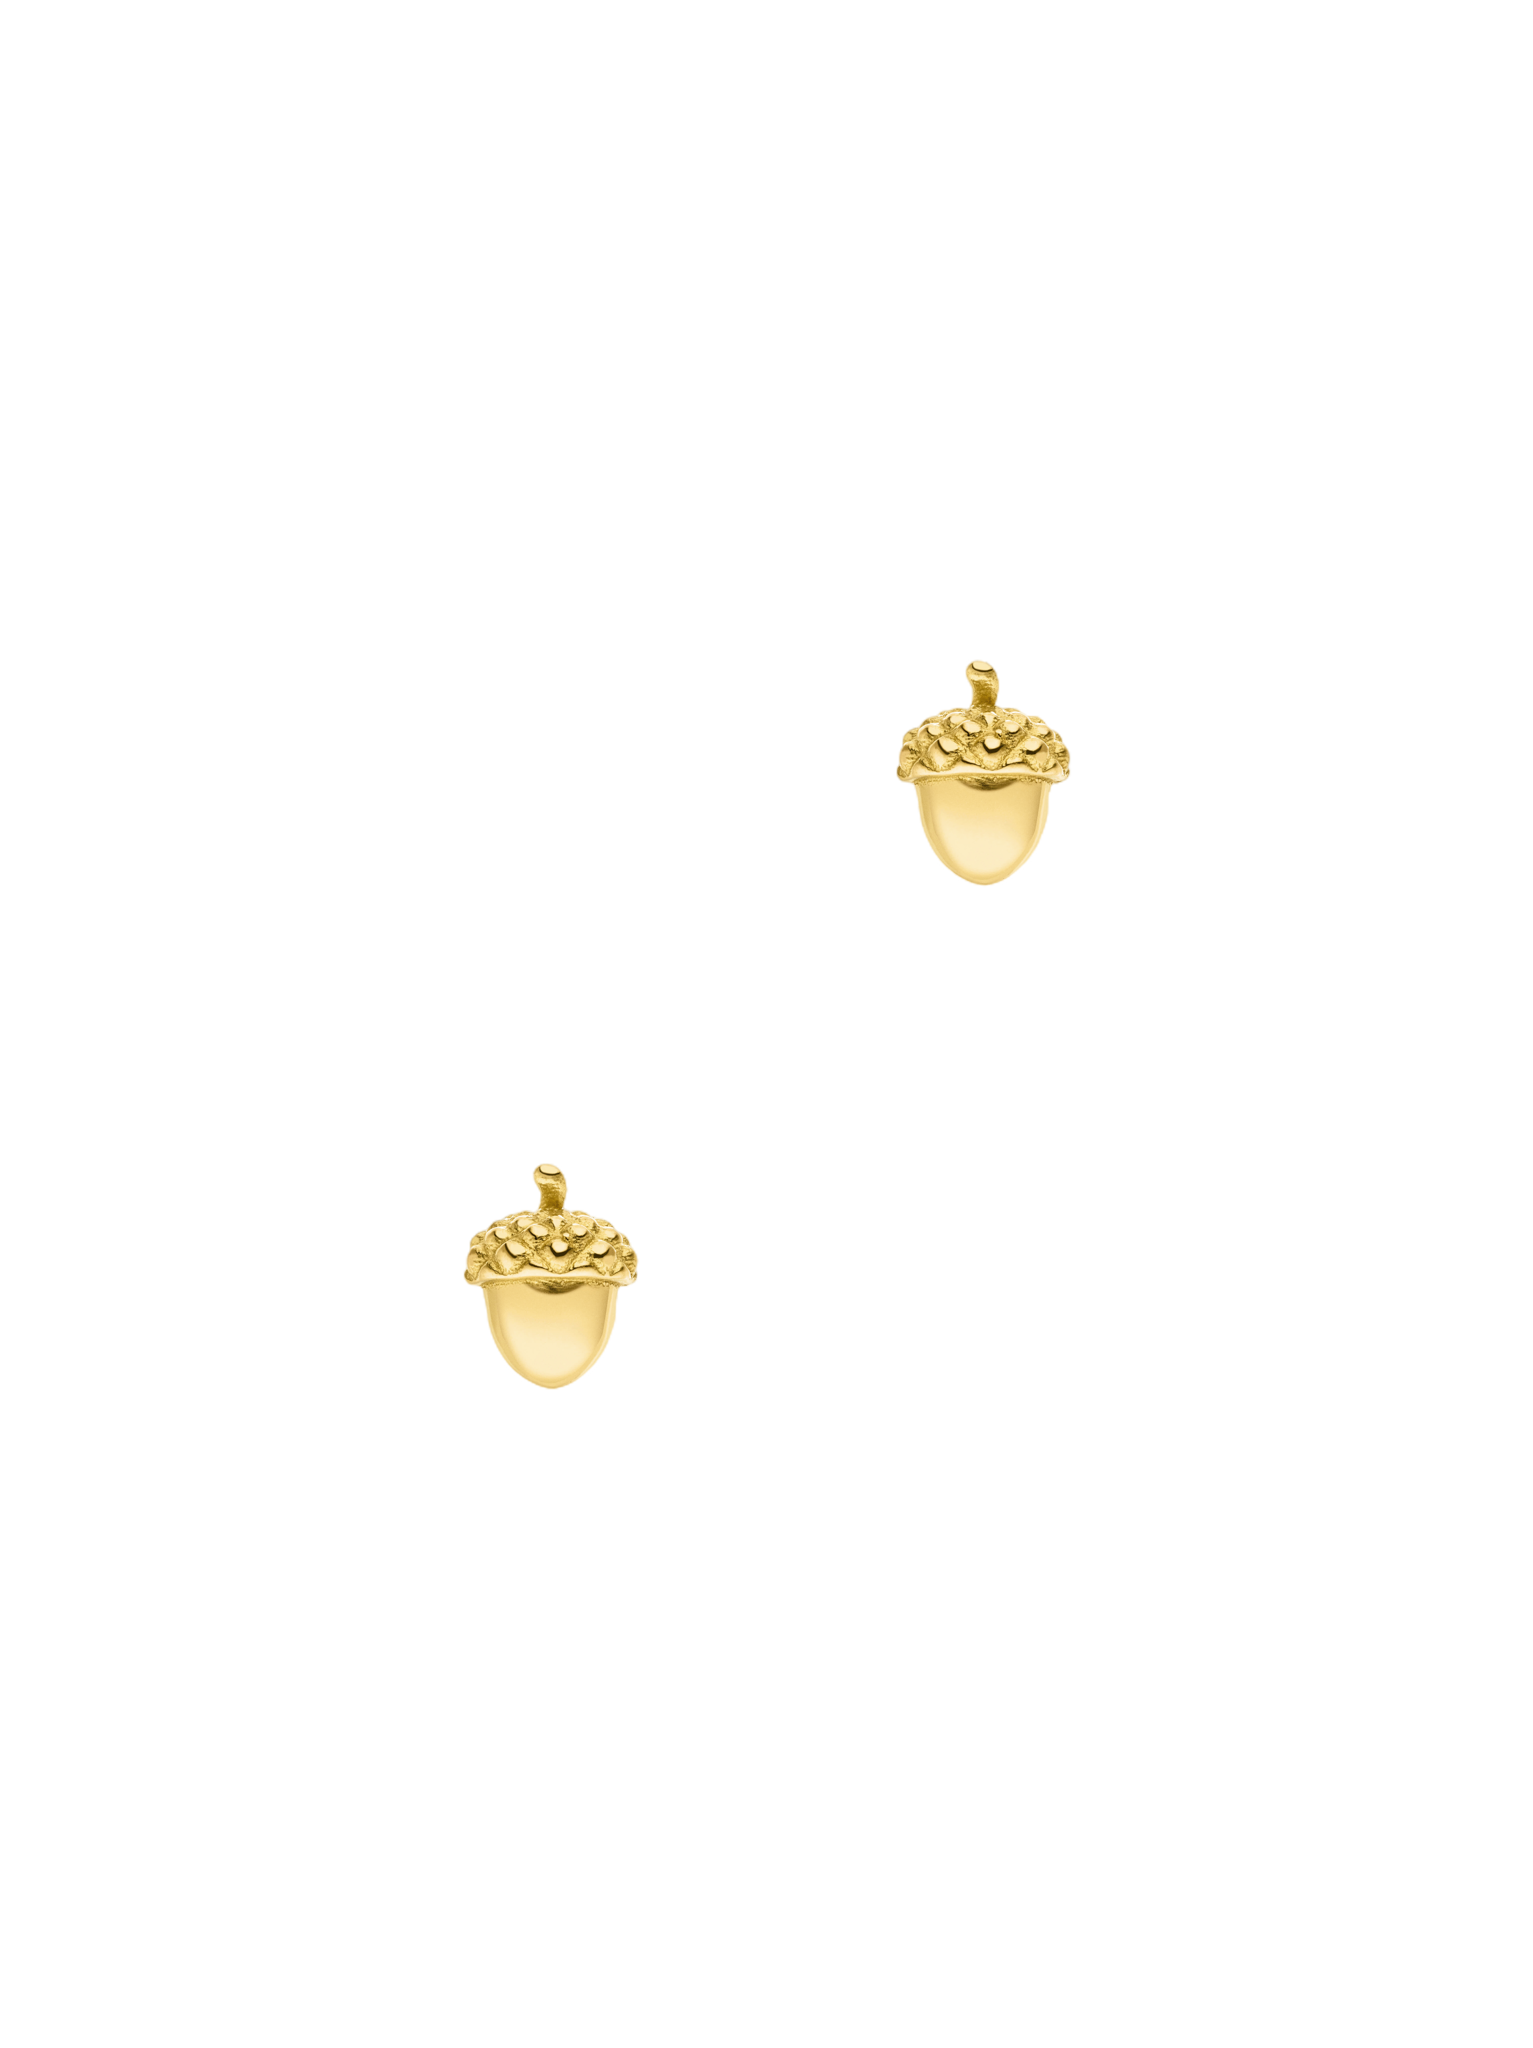 Acorn stud earrings 18k